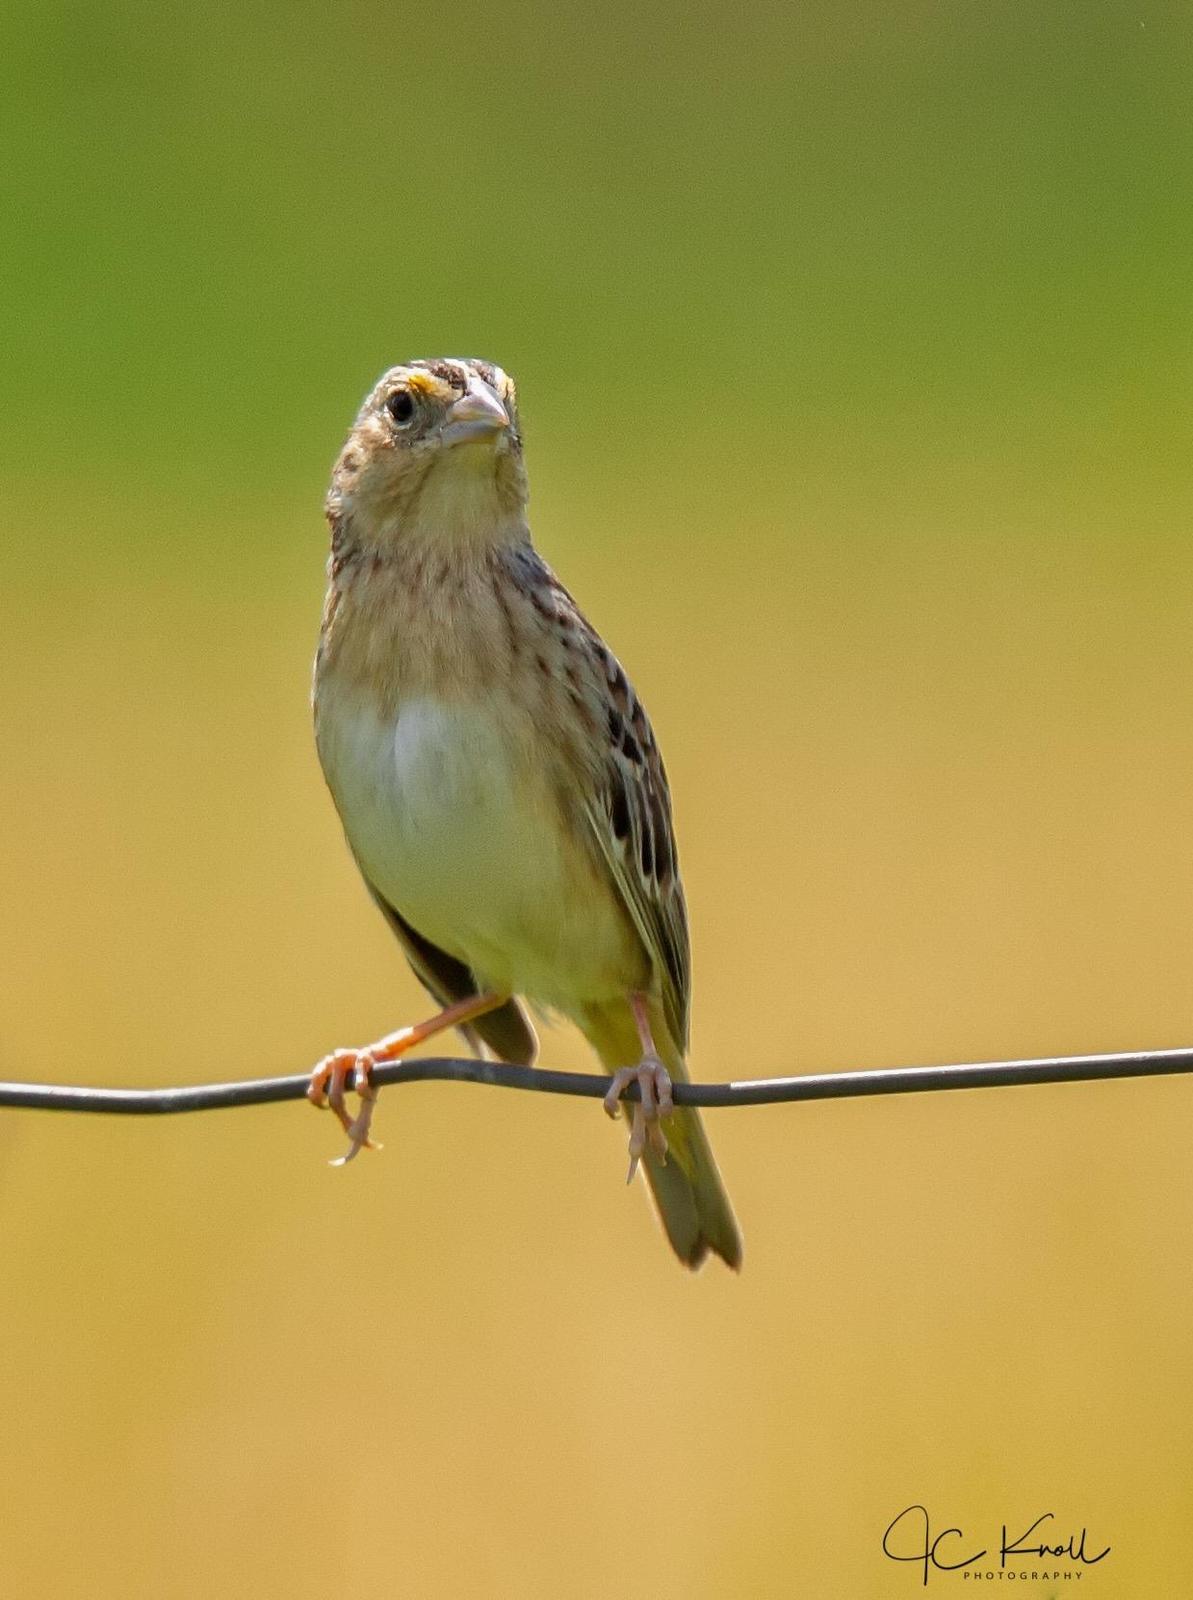 Grasshopper Sparrow Photo by JC Knoll